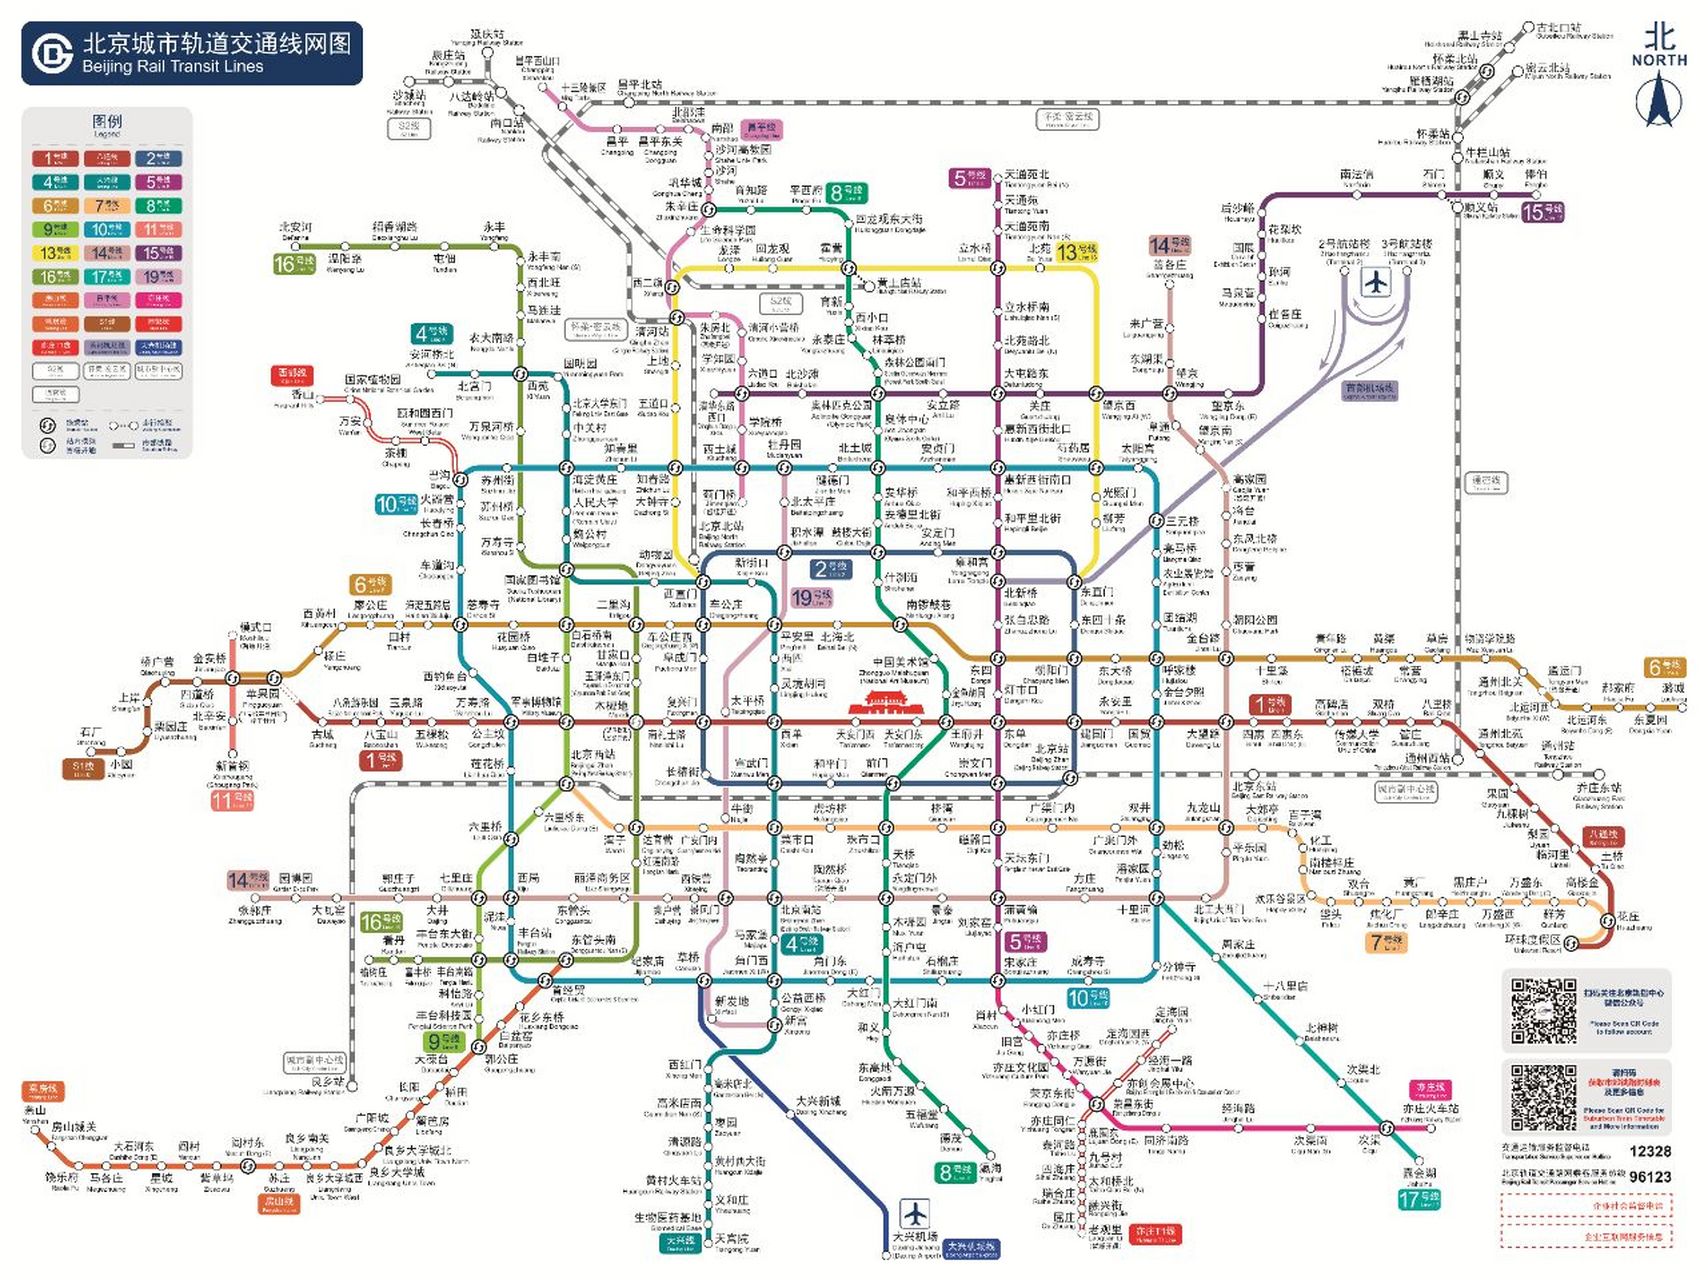 最新版北京地铁线路图 3月18日起二里沟站正式开通,地铁图又该换新了